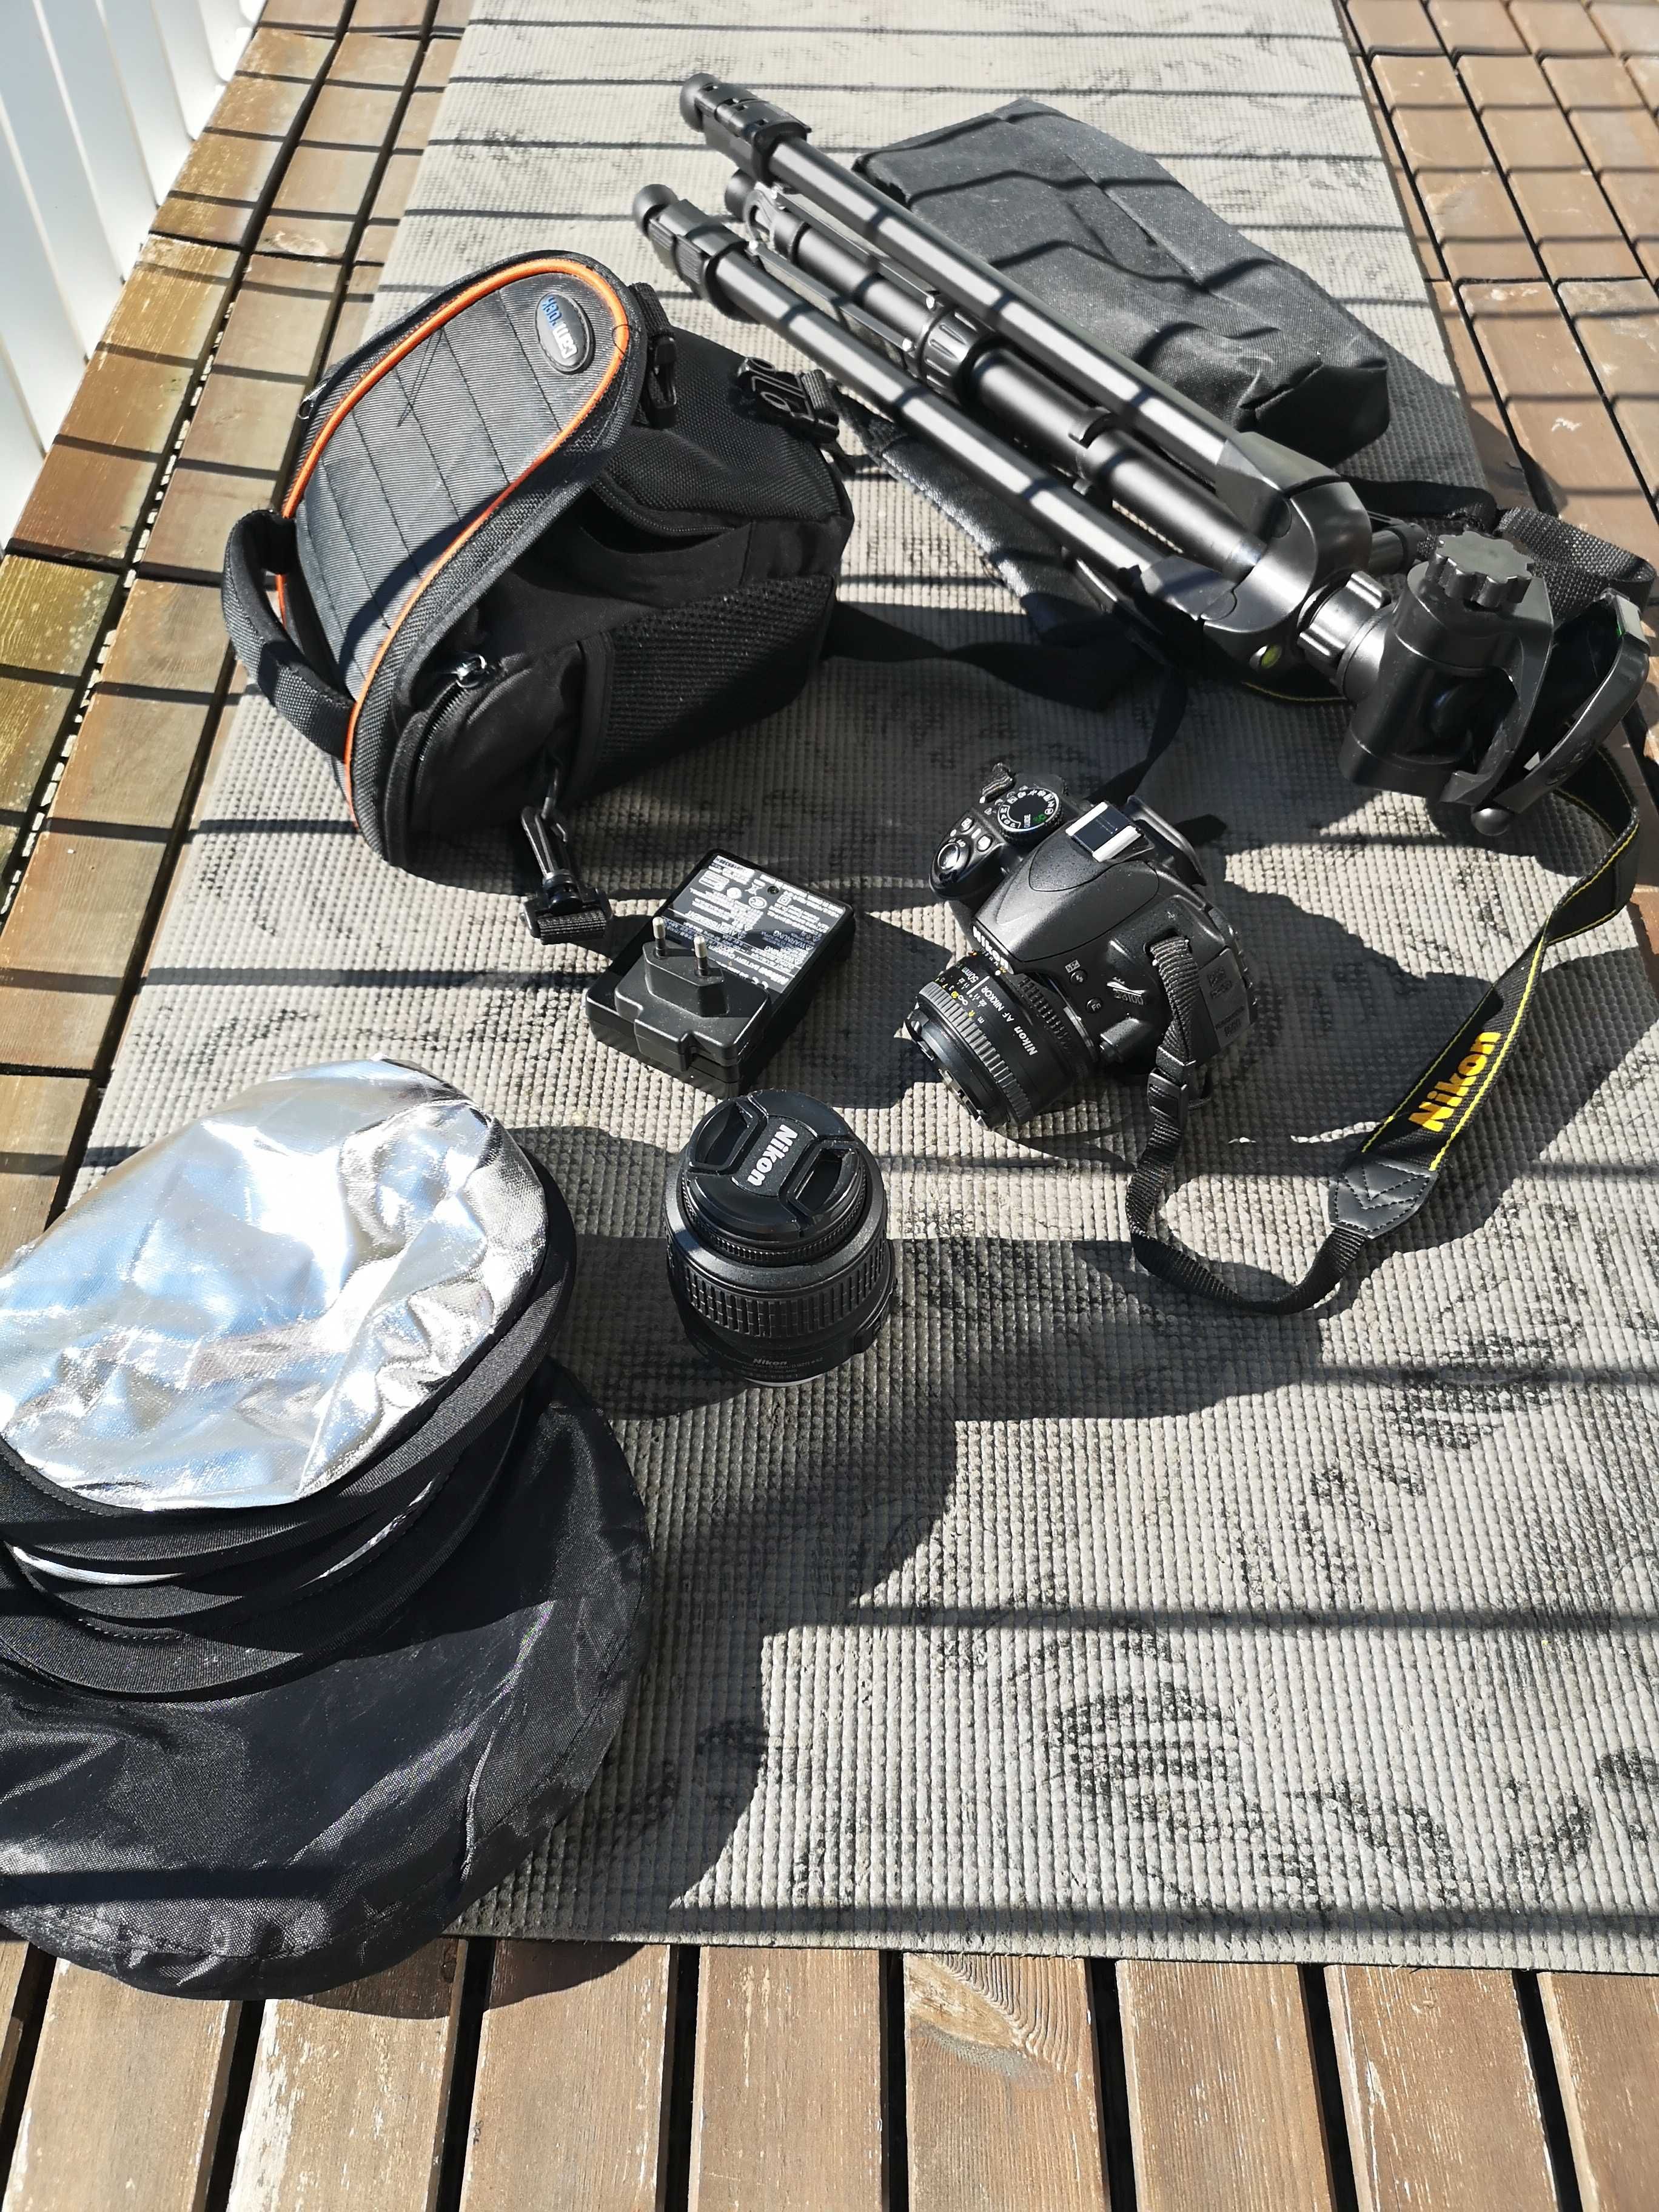 Aparat Nikon d3100, 2 obiektywy, torba, statyw